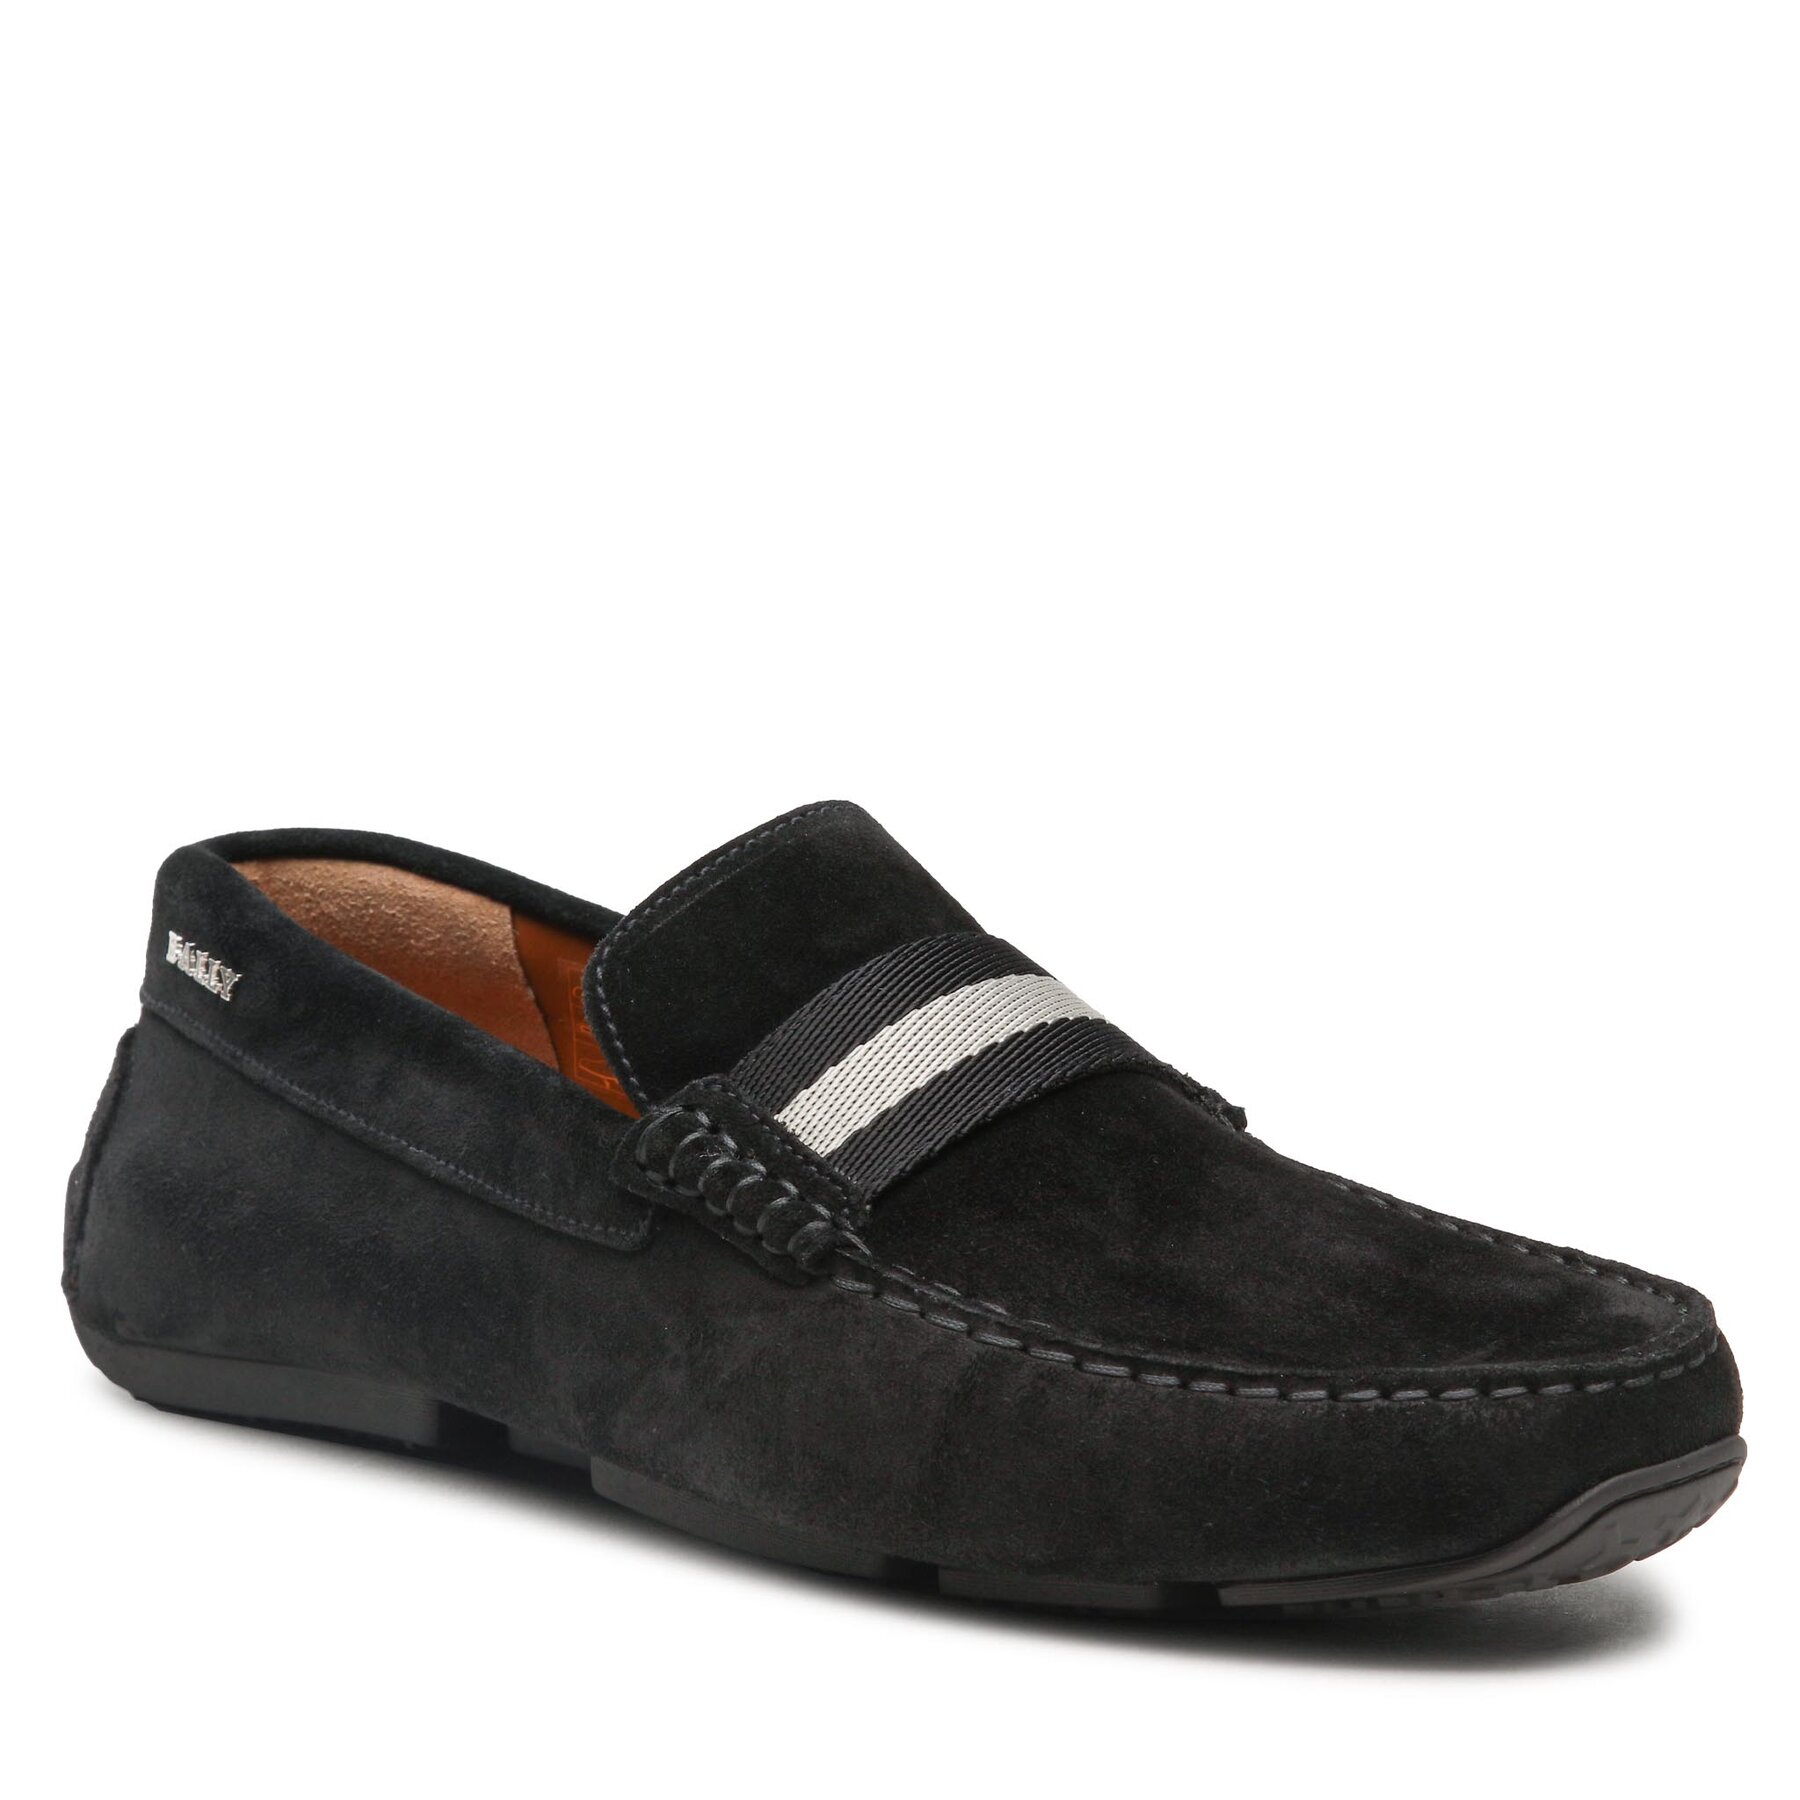 Pantofi Bally Pearce 585330 Black